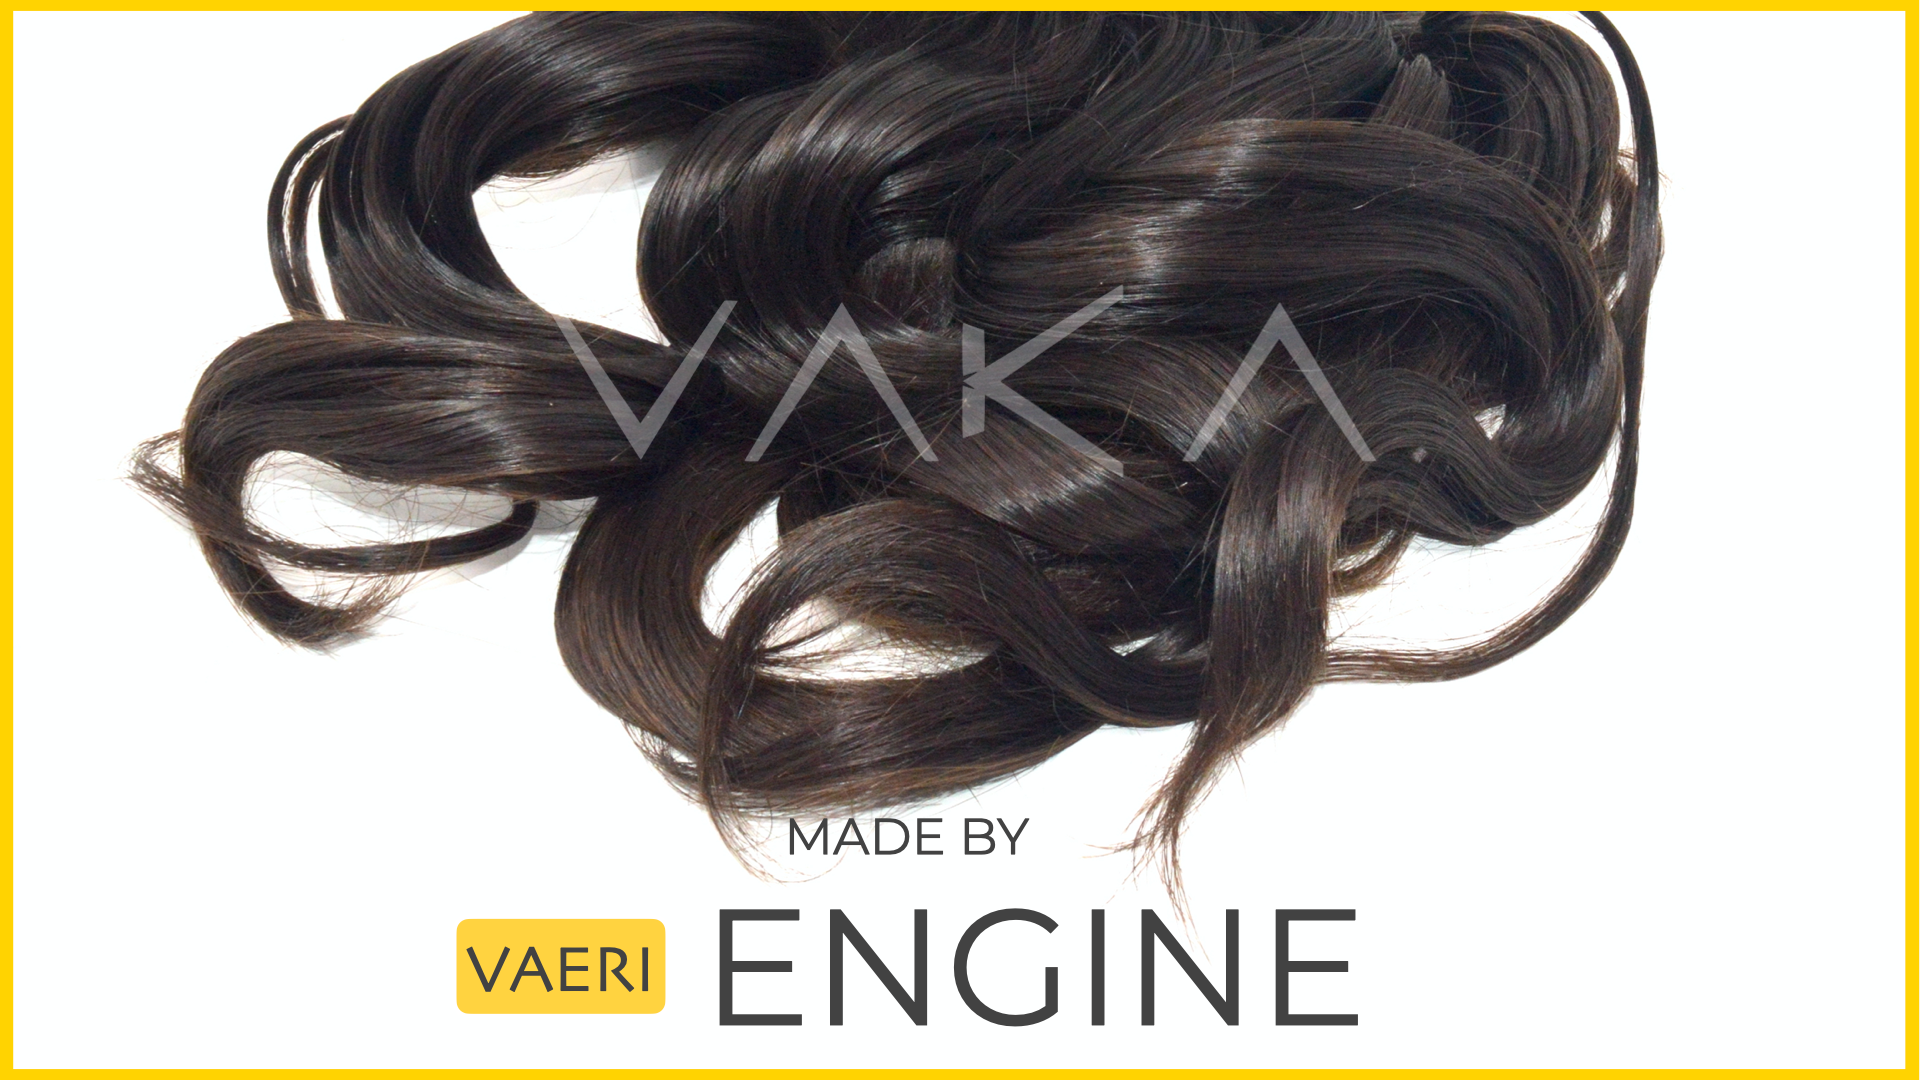 ‎VAERI ENGINE HAIR EXTENSIONS MANUFACTURING CUTICLE RICH HAIR